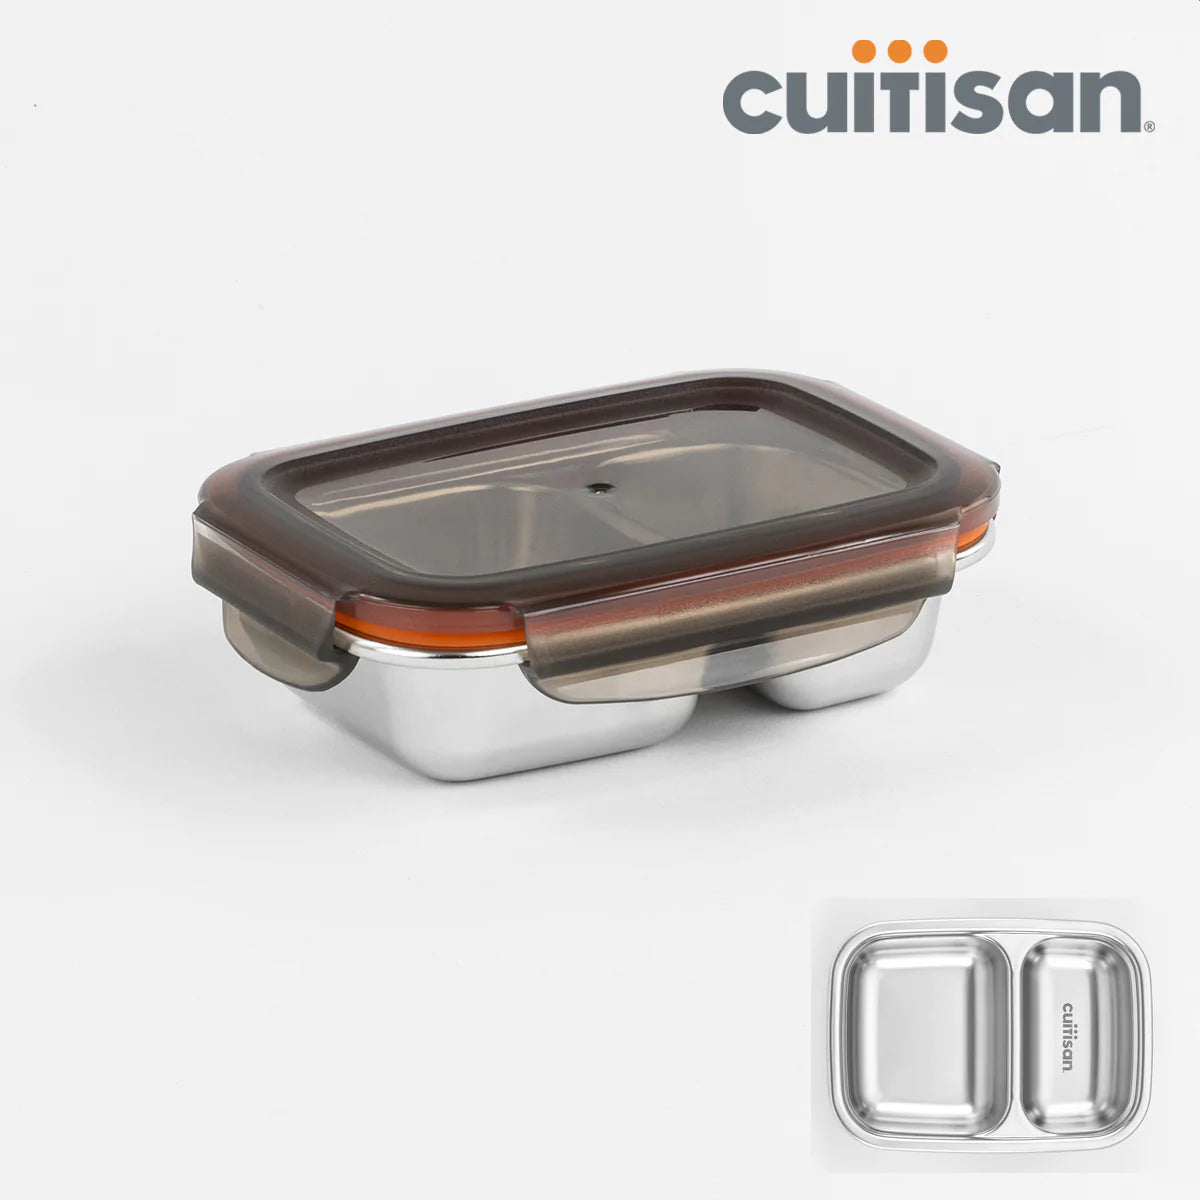 Cuitisan 韓國製 不銹鋼可微波加熱食物盒 - 分隔系列